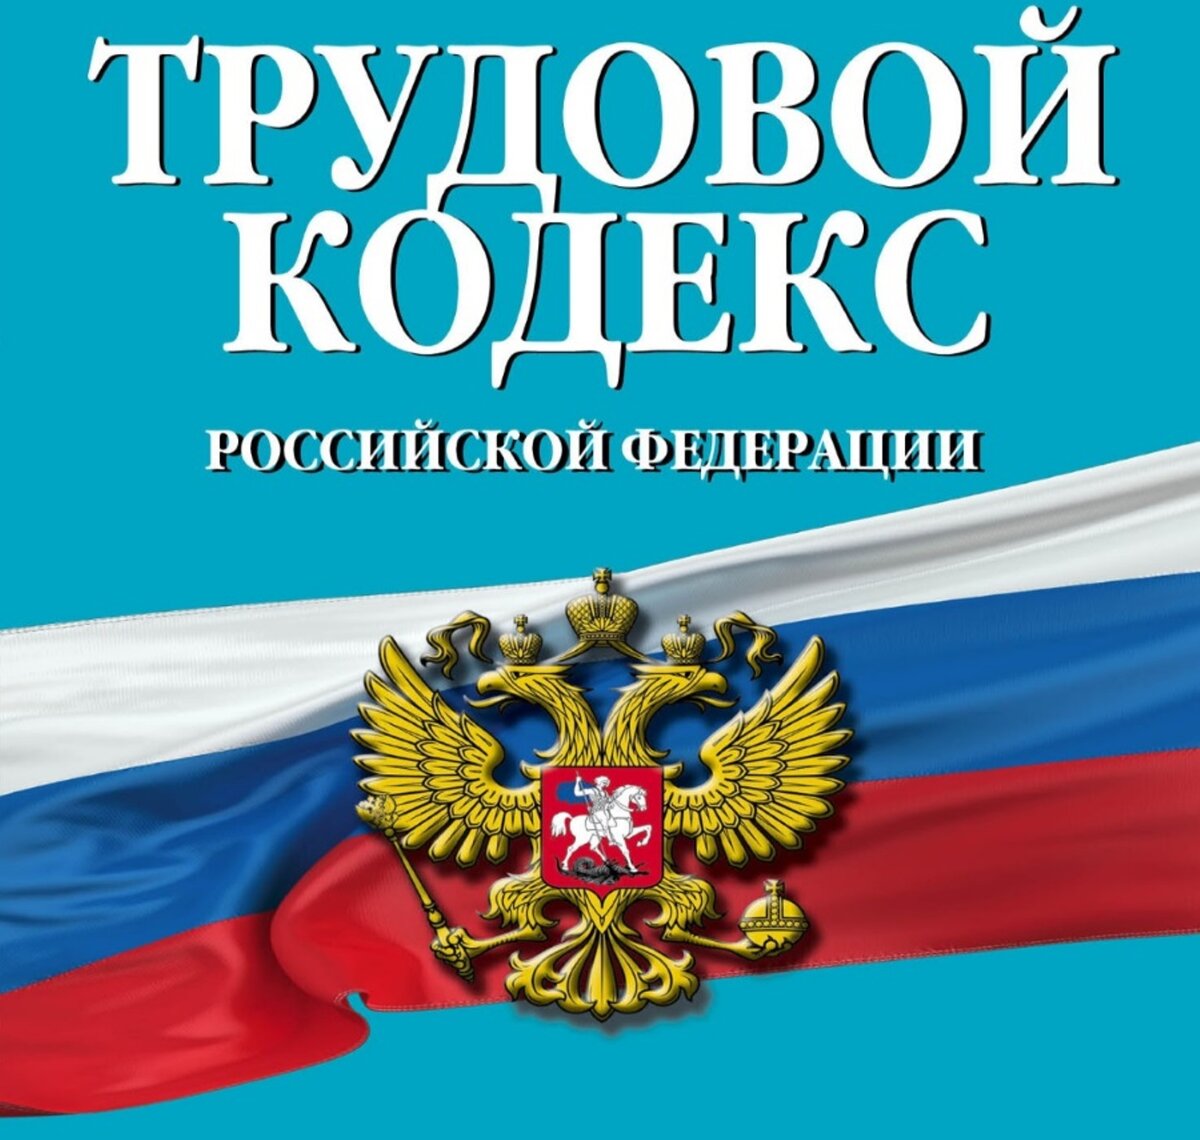 1 февраля - день рождения Трудового Кодекса РФ.